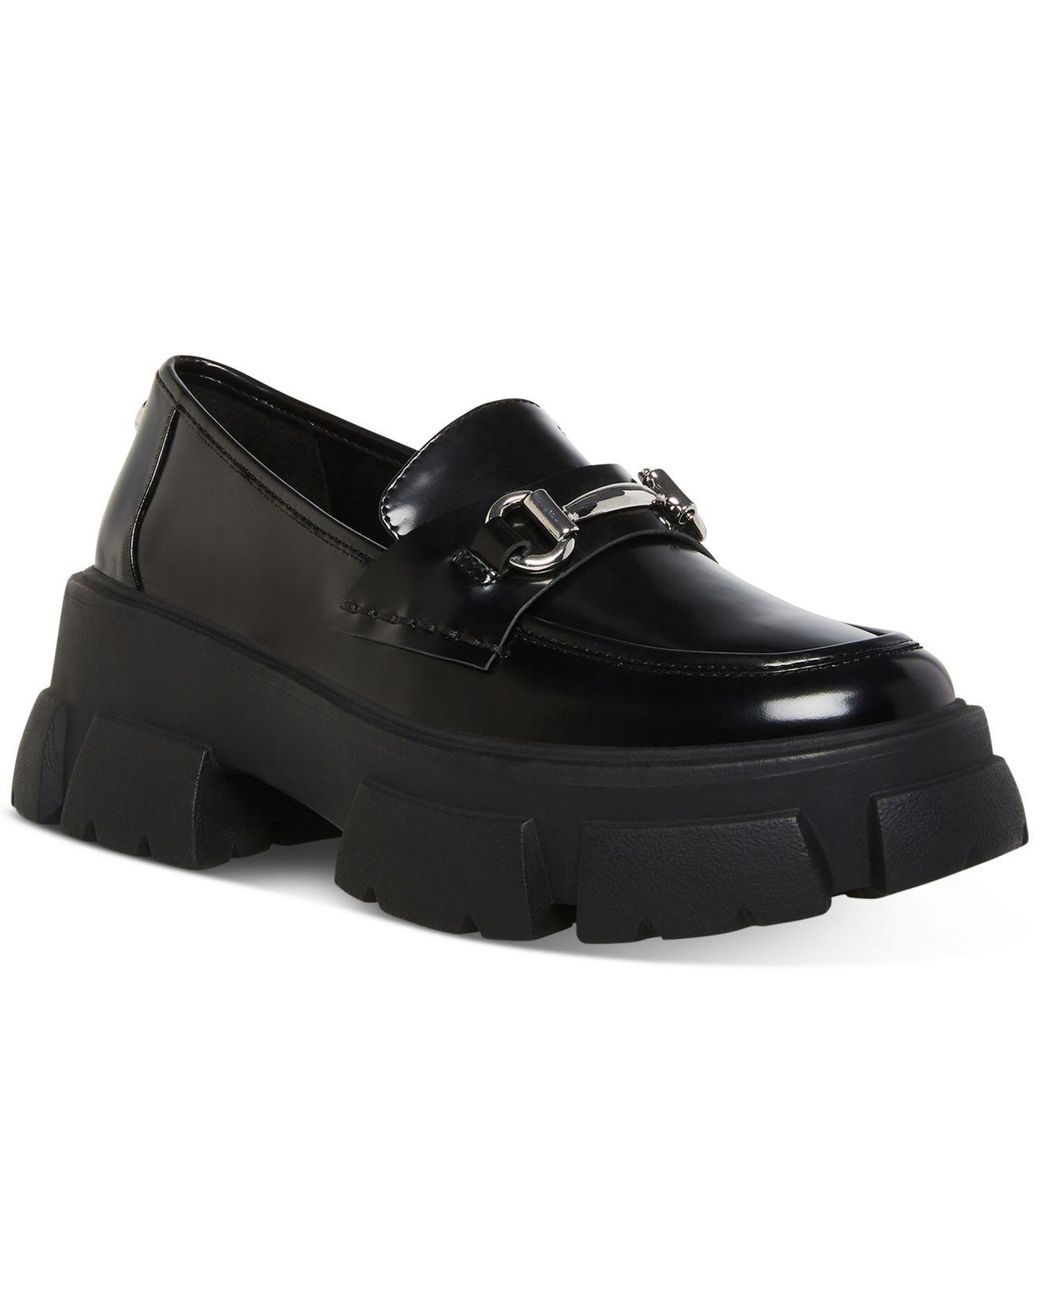 Steve Madden Trifecta Lug-sole Platform Loafers in Black | Lyst